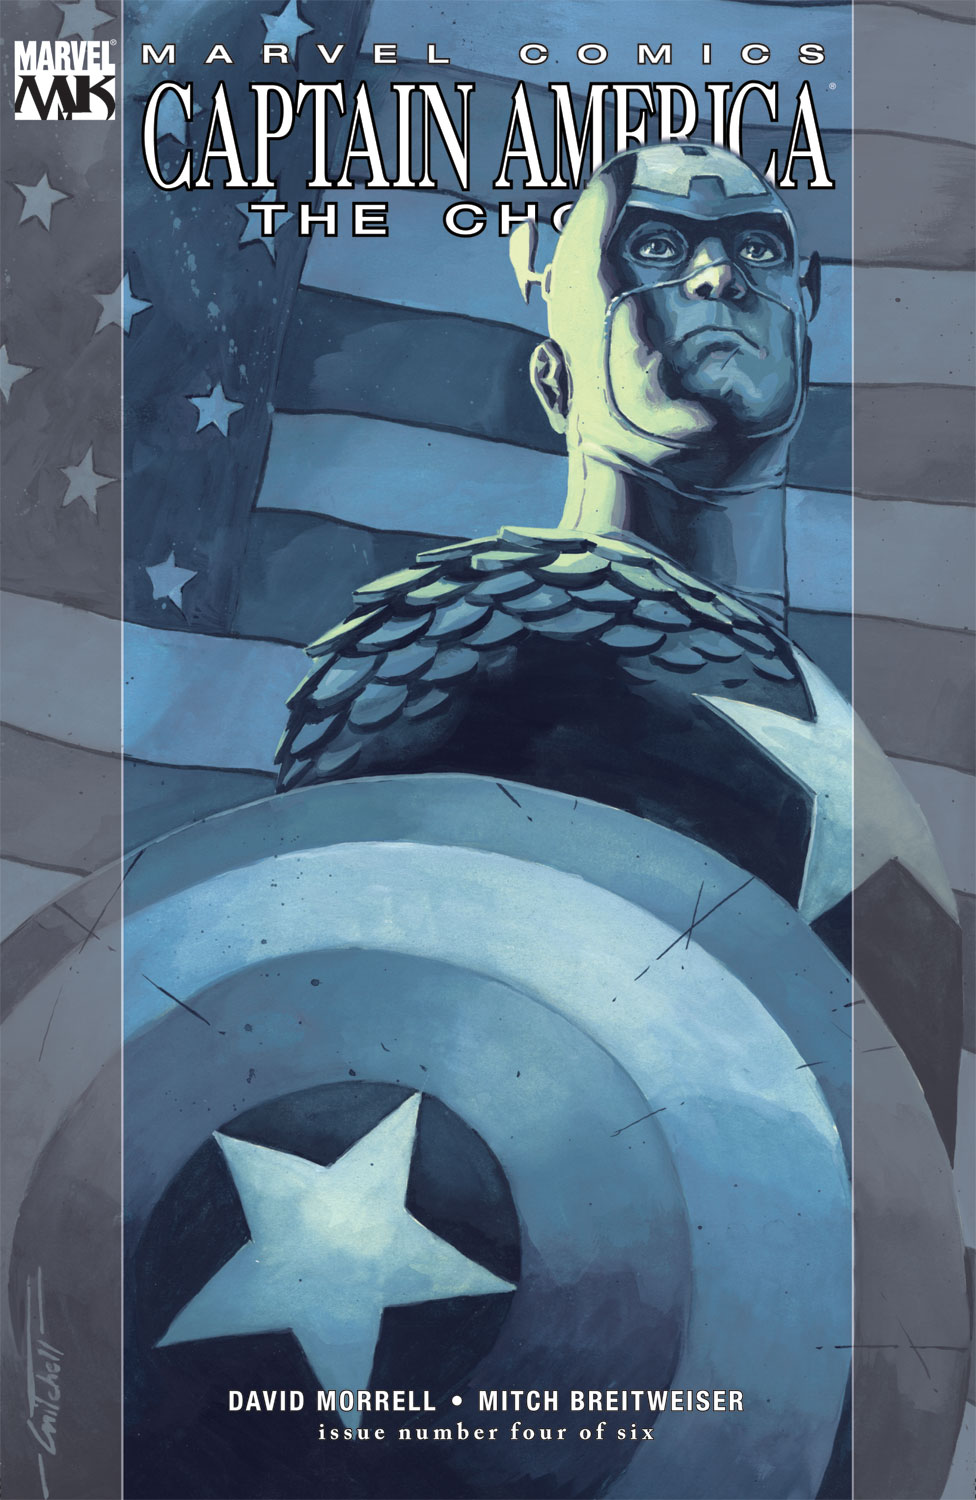 Captain America: The Chosen (2007) #4